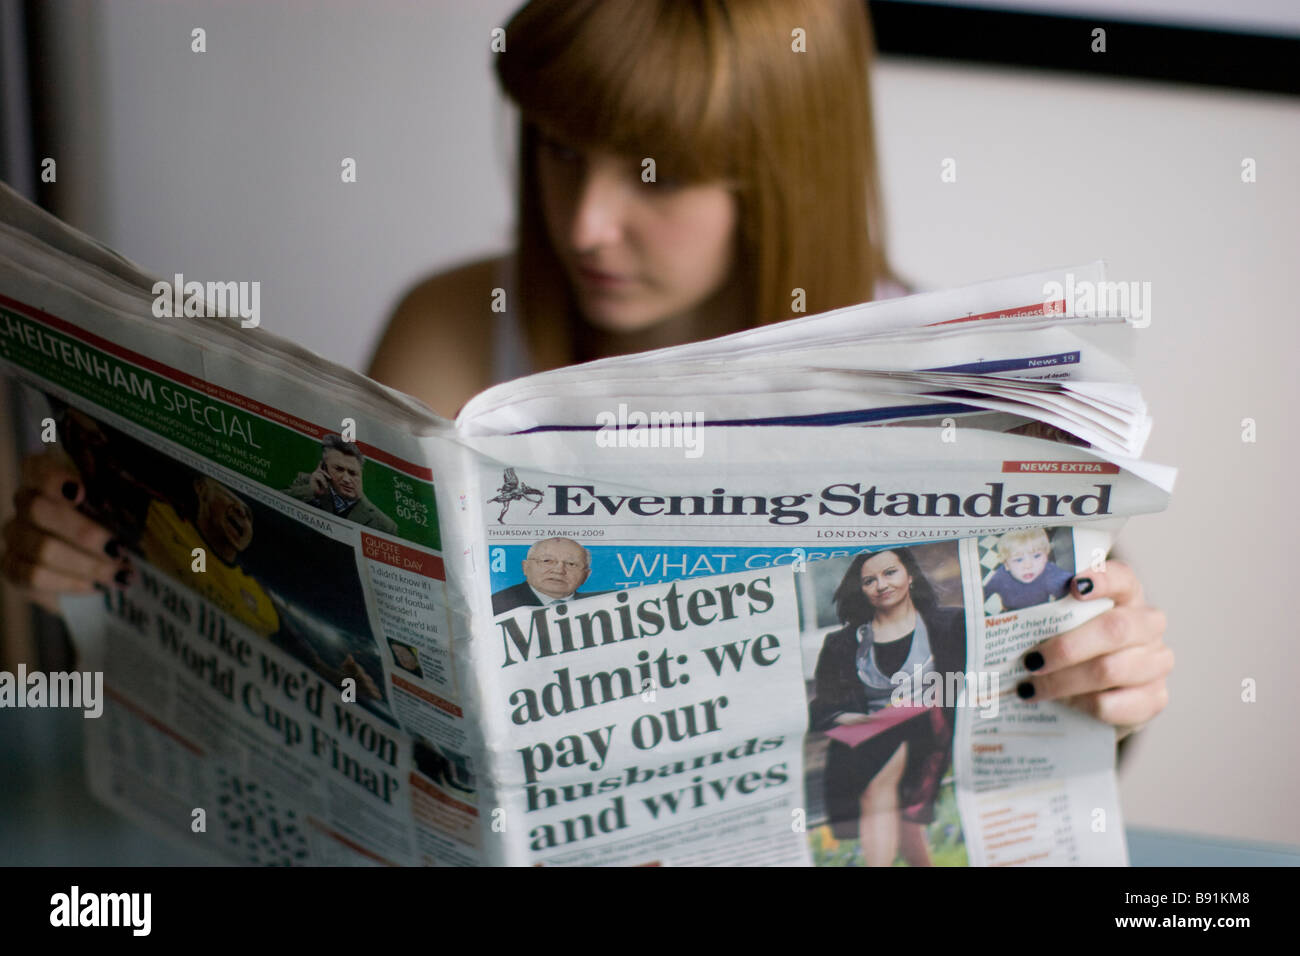 Jeune femme lisant un journal quotidien l'Evening Standard Banque D'Images